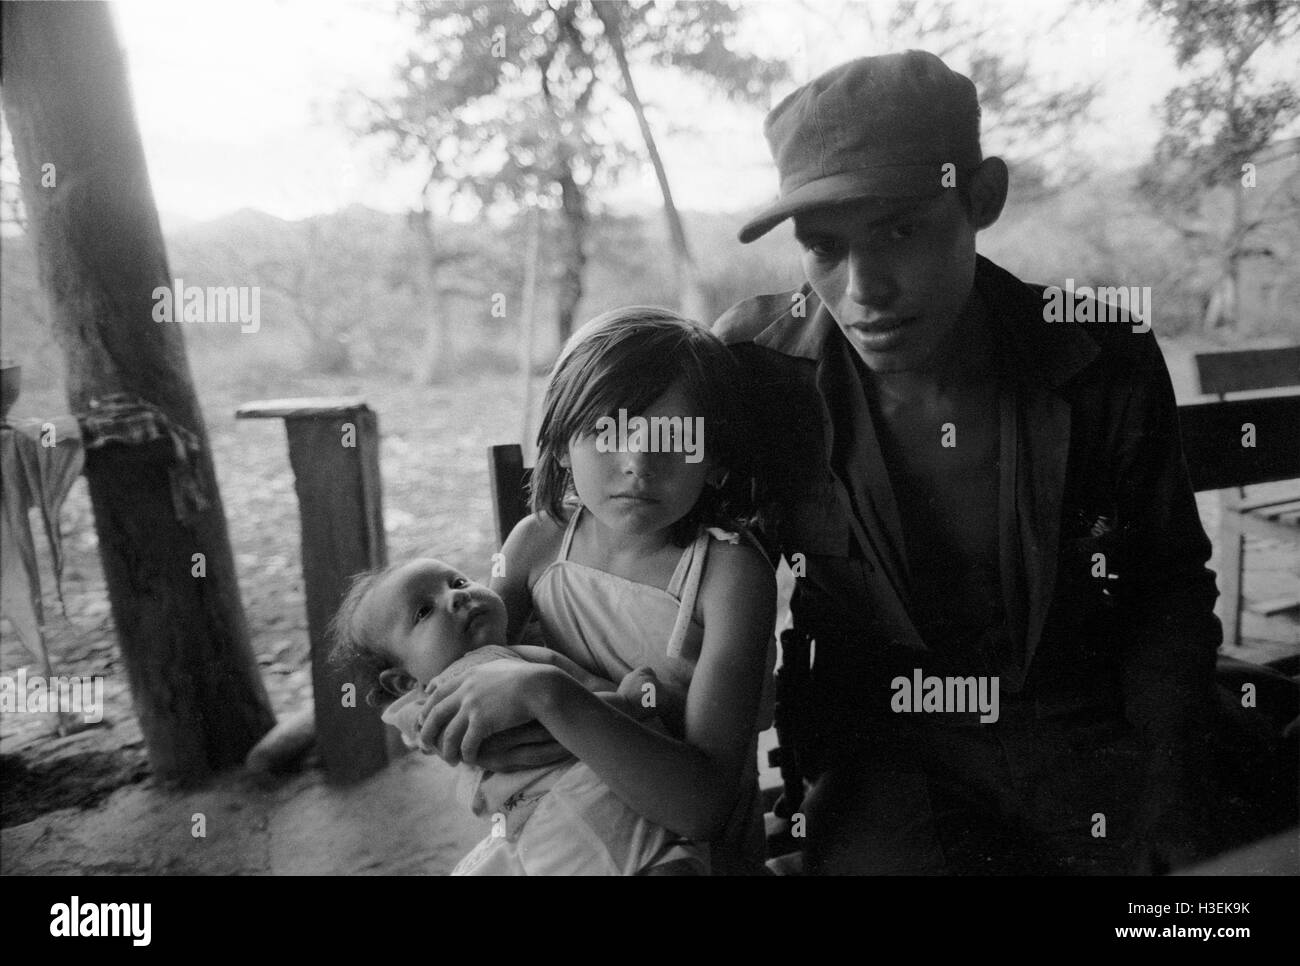 CHALATENANGO, EL SALVADOR, FEB 1984: - innerhalb der FPL Zonen der Steuerung A FPL Guerillakämpfer machen einen Besuch zu Hause sitzt mit seinem Bruder Schwester und Baby.   Foto: Mike Goldwater Stockfoto